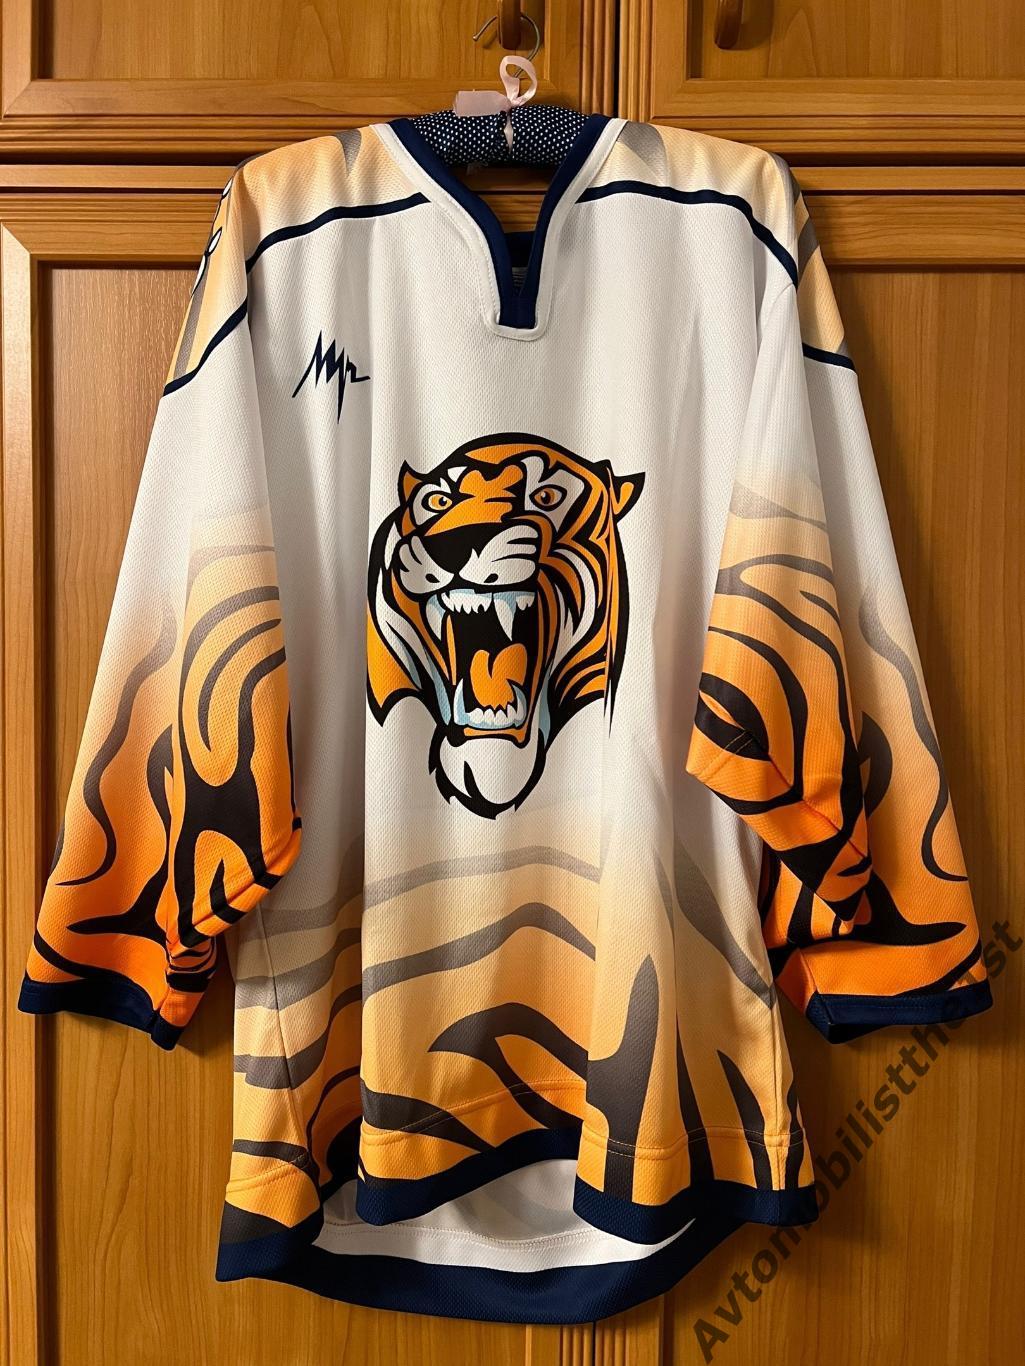 Хоккейный свитер джерси форма МХК Амурские Тигры Хабаровск старый логотип